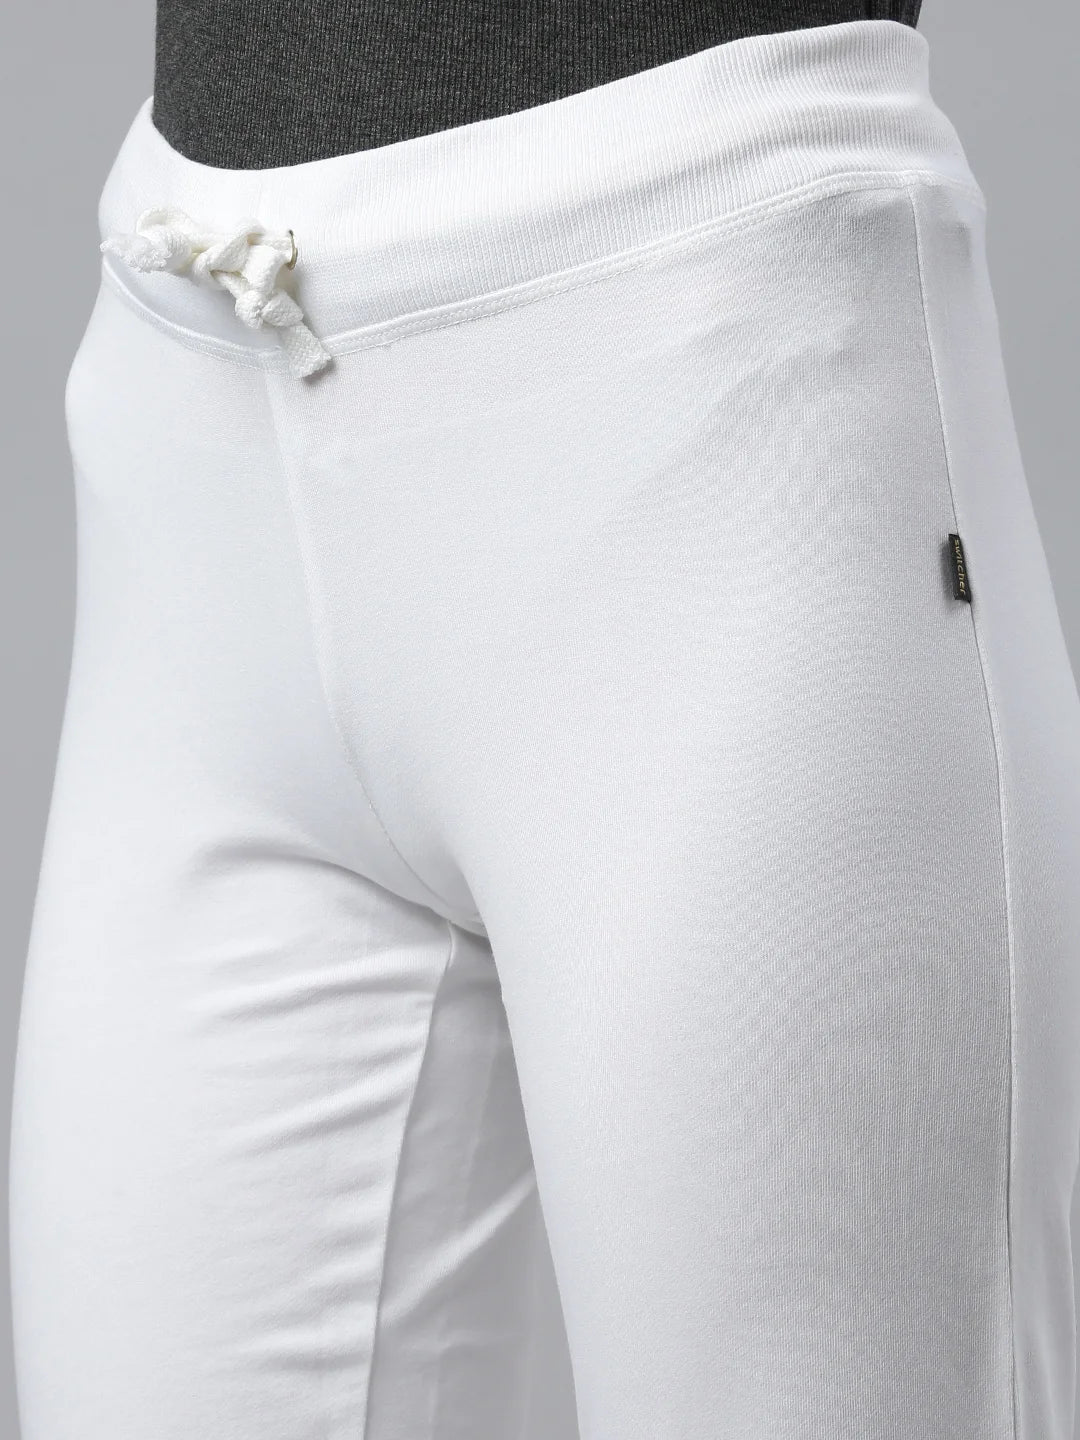 Femme-Candice-Pantalon-Survêtement-Coton-Bio-Blanc-Zoom-in